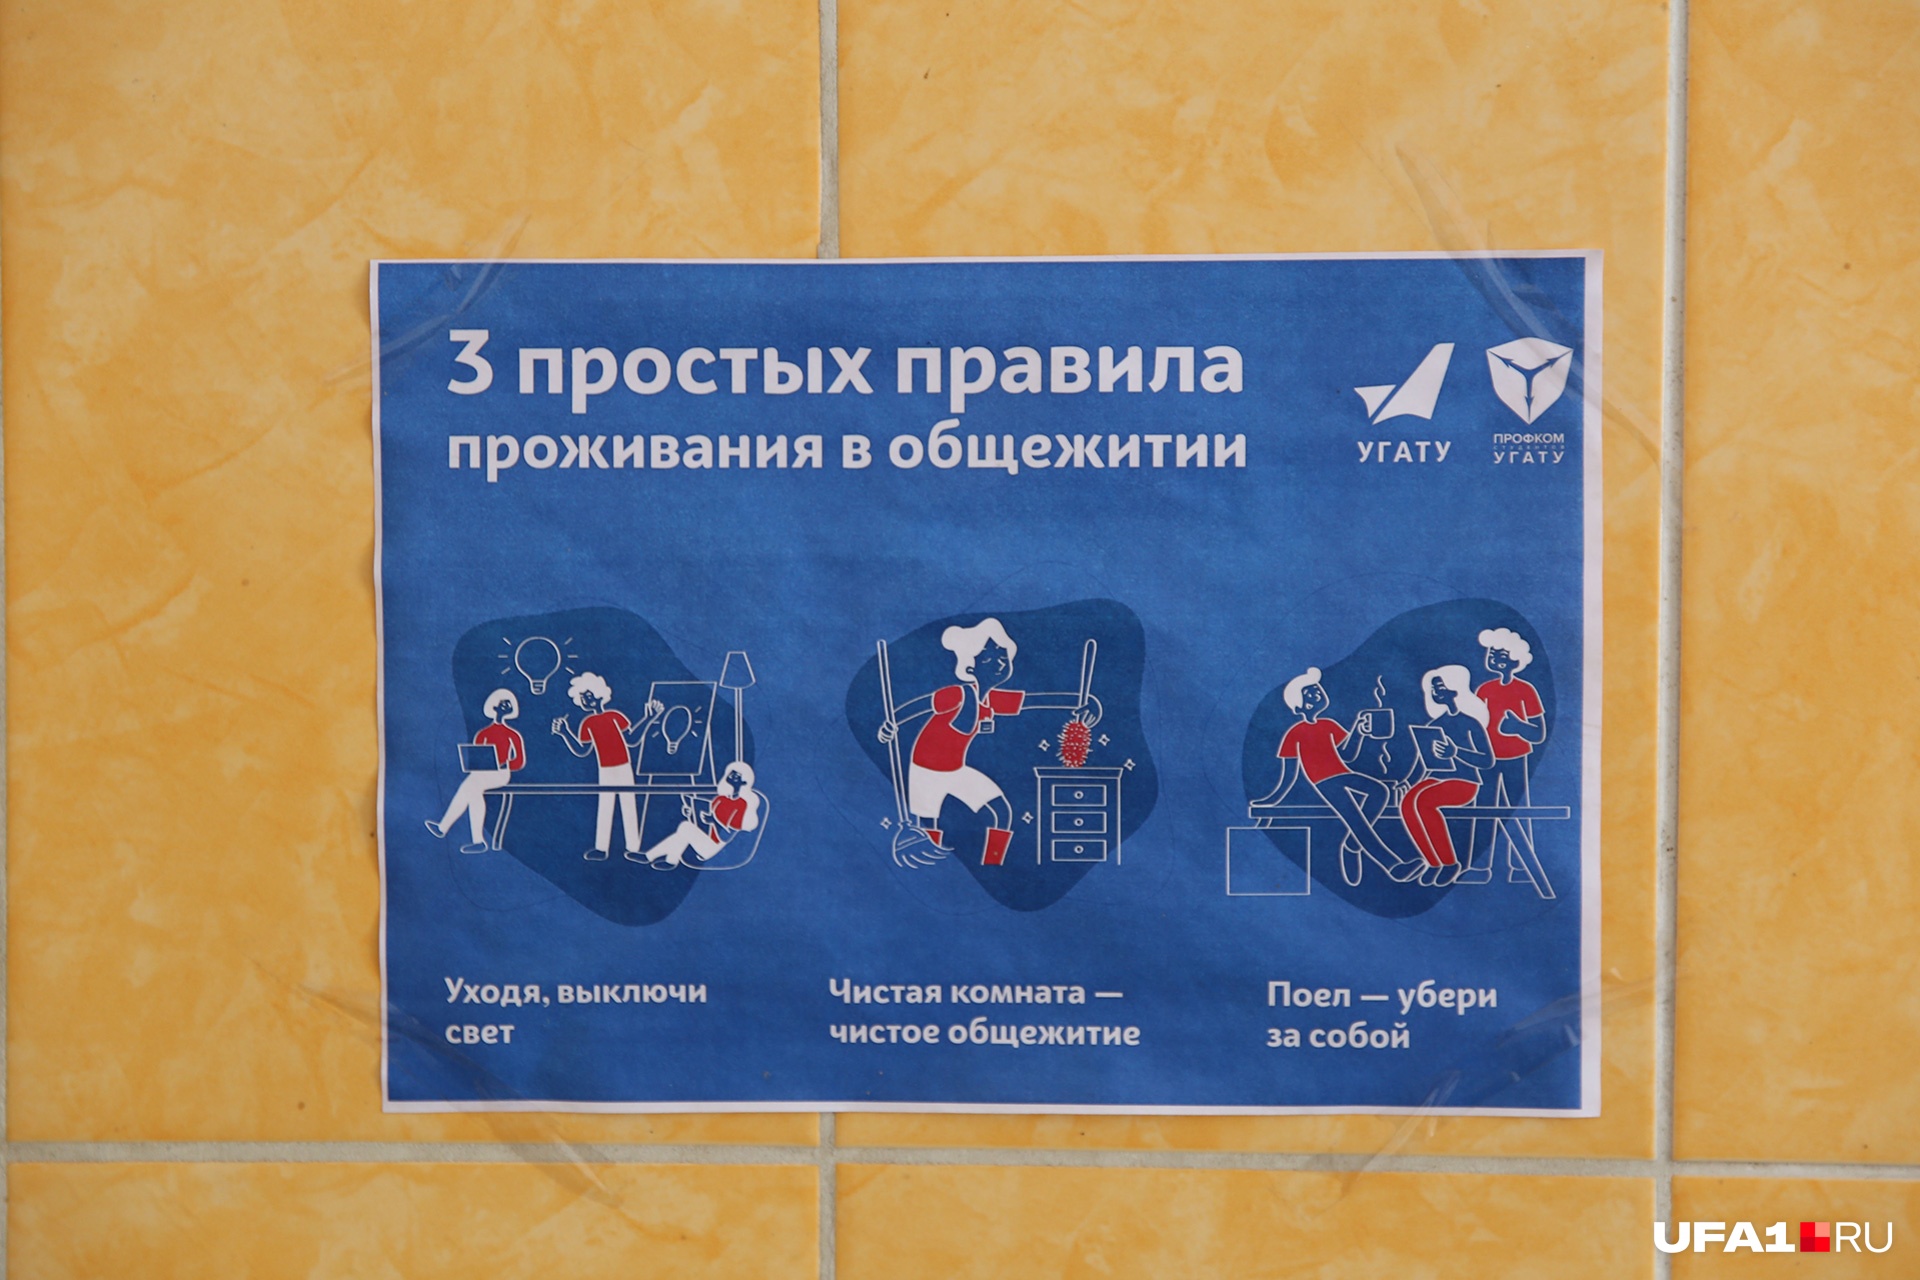 В общежитии есть свой распорядок, который поможет ужиться жителям ЛНР и ДНР